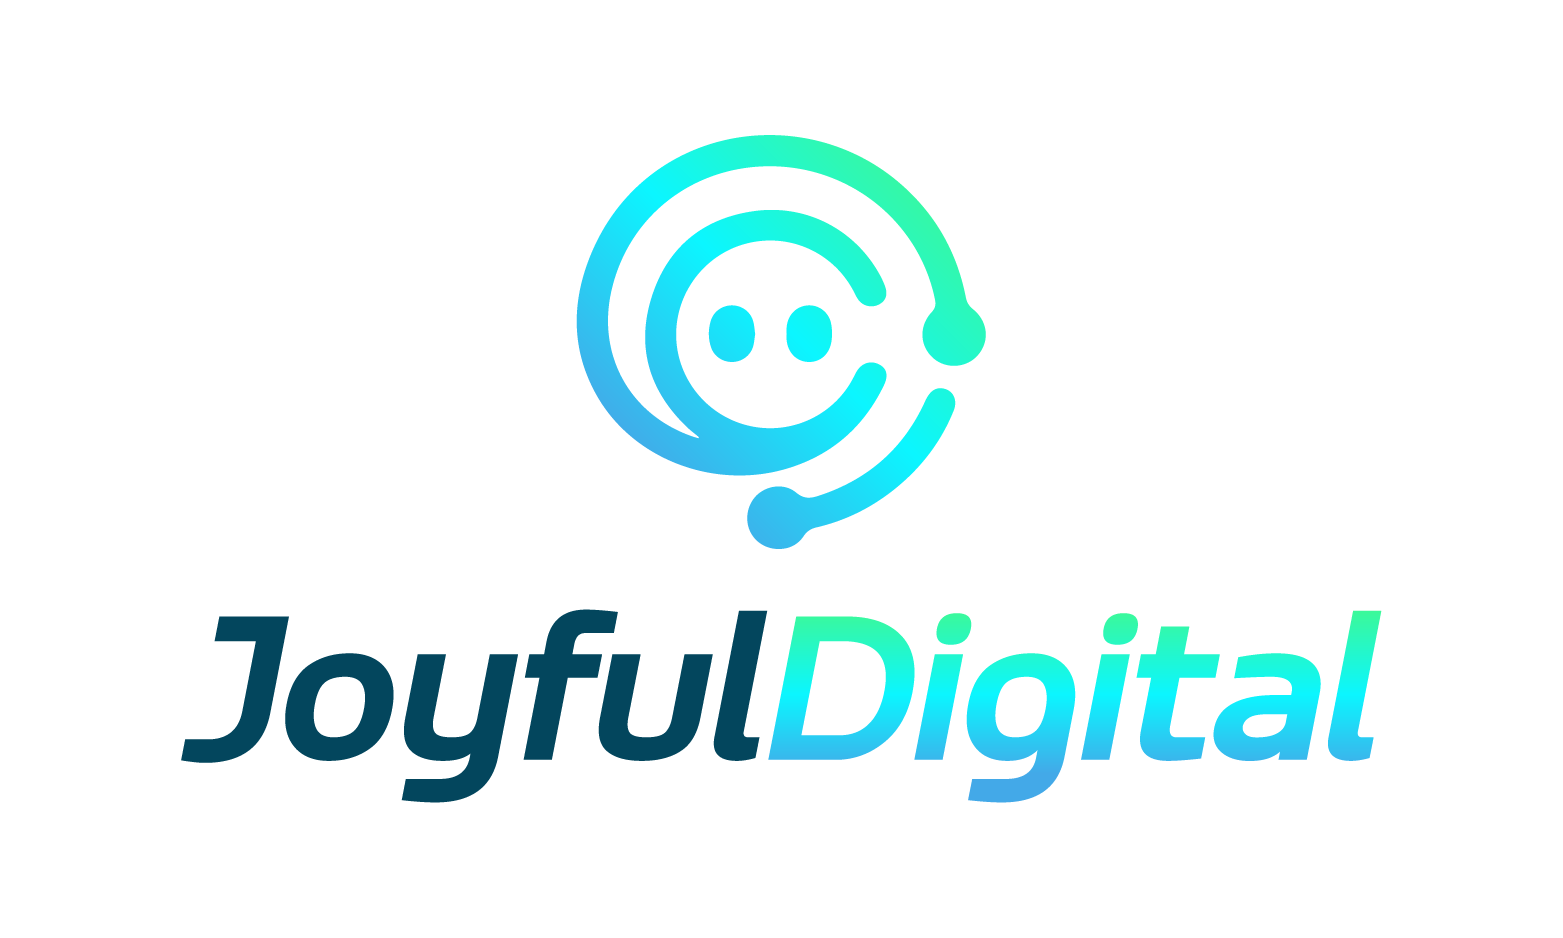 JoyfulDigital.com - Creative brandable domain for sale